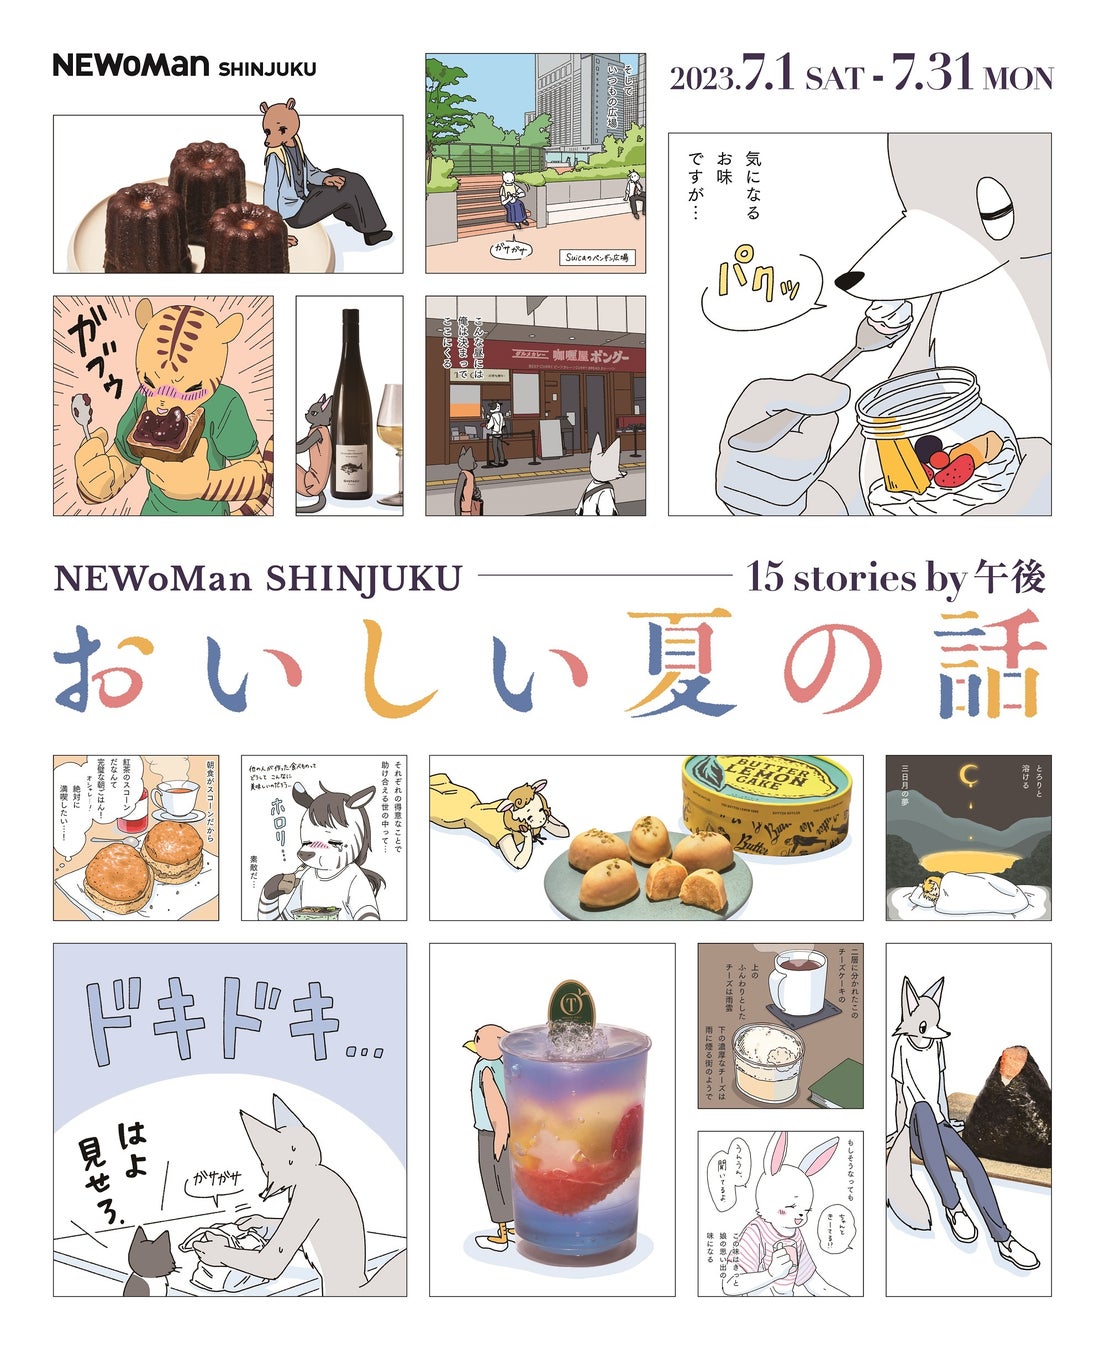 ニュウマン新宿と「眠れぬ夜はケーキを焼いて」の漫画家“午後”が「食」を通したコラボレーション！ニュウマン新宿「おいしい夏の話　15stories by 午後」